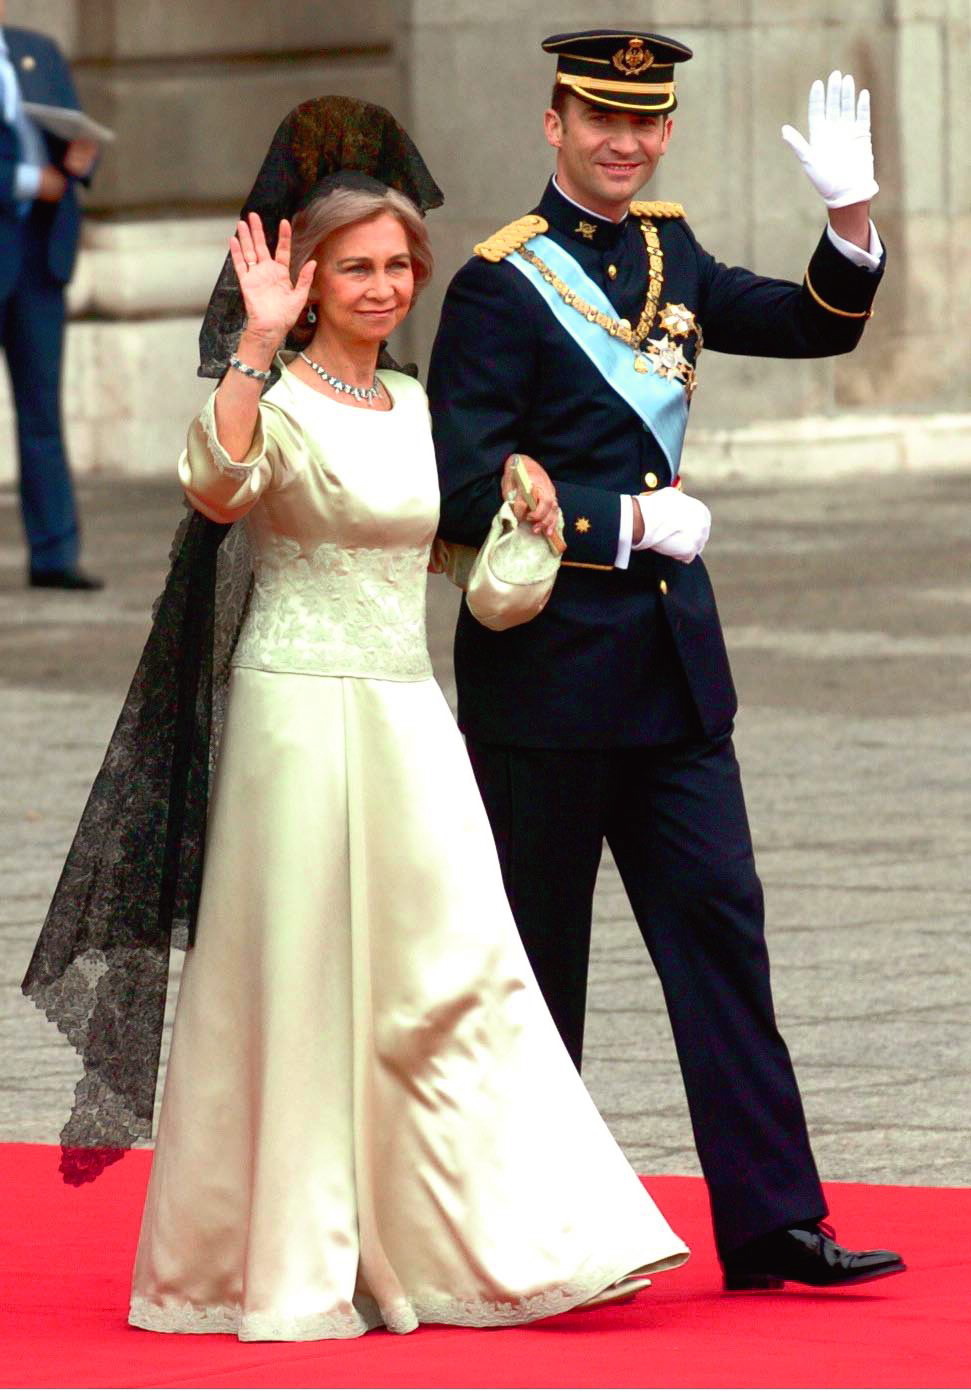 La colección de vestidos de la reina Sofía es la mejor inspiración para  invitadas y madrinas elegantes 